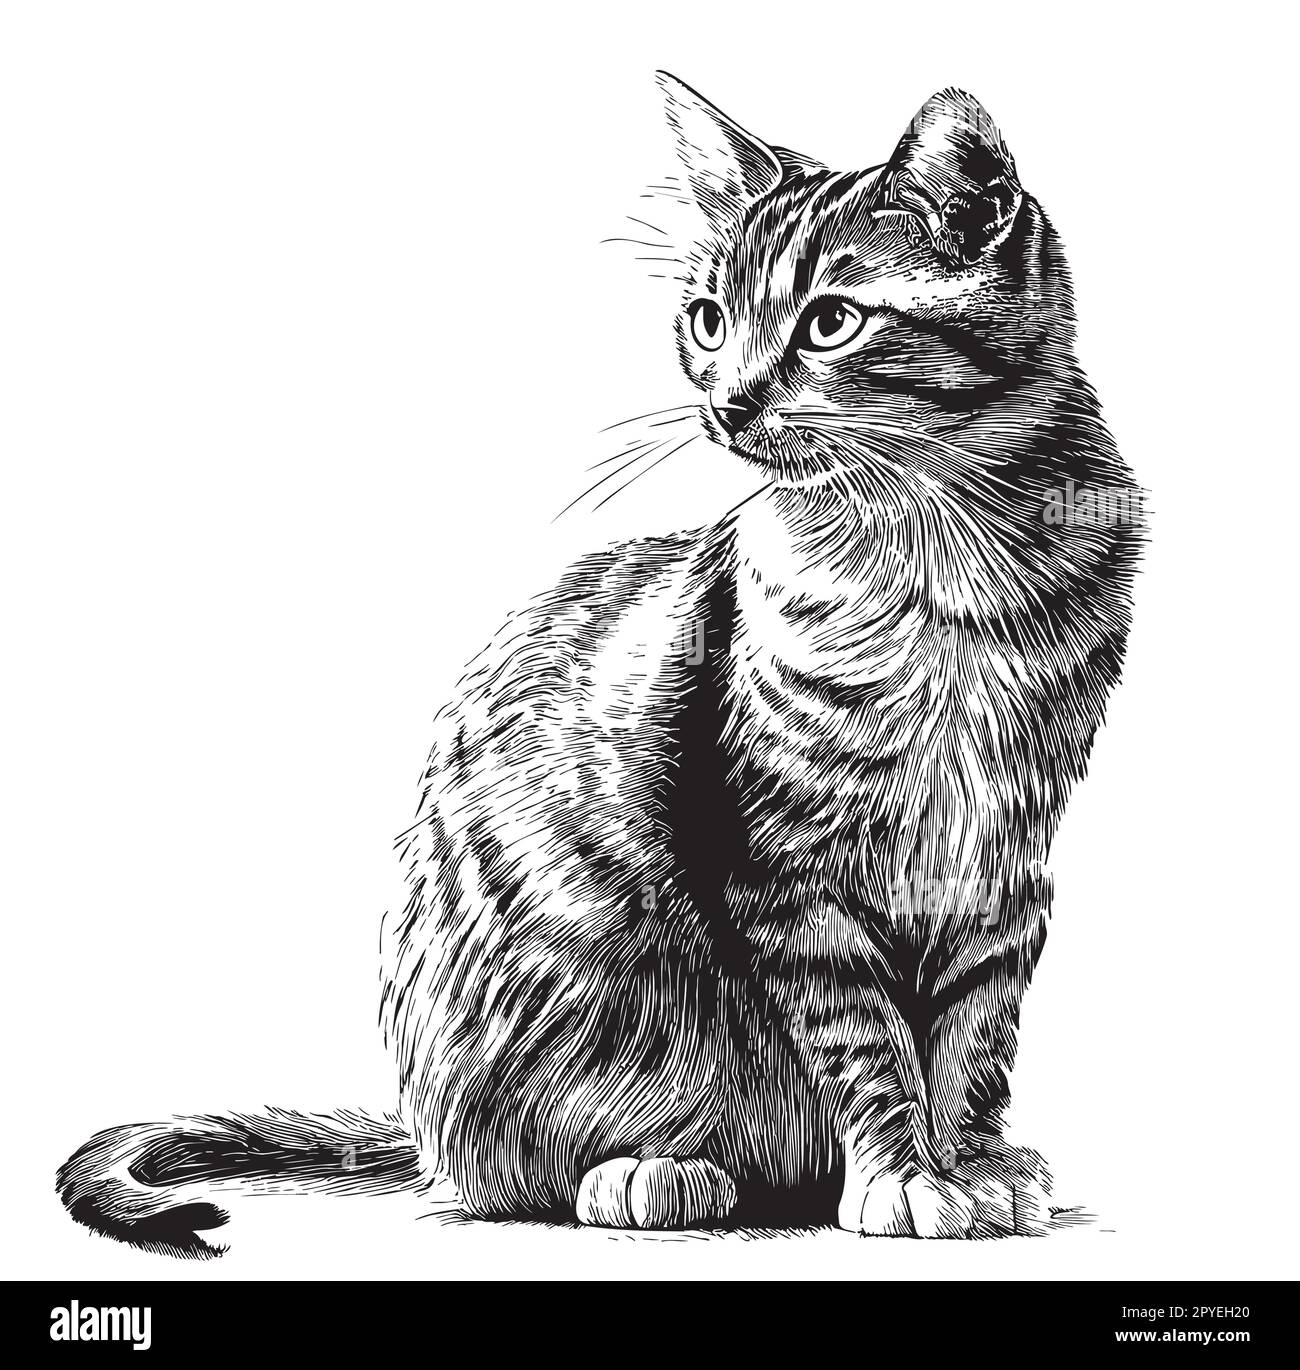 Dessin de chat dessiné à la main dans une illustration de style Doodle Illustration de Vecteur